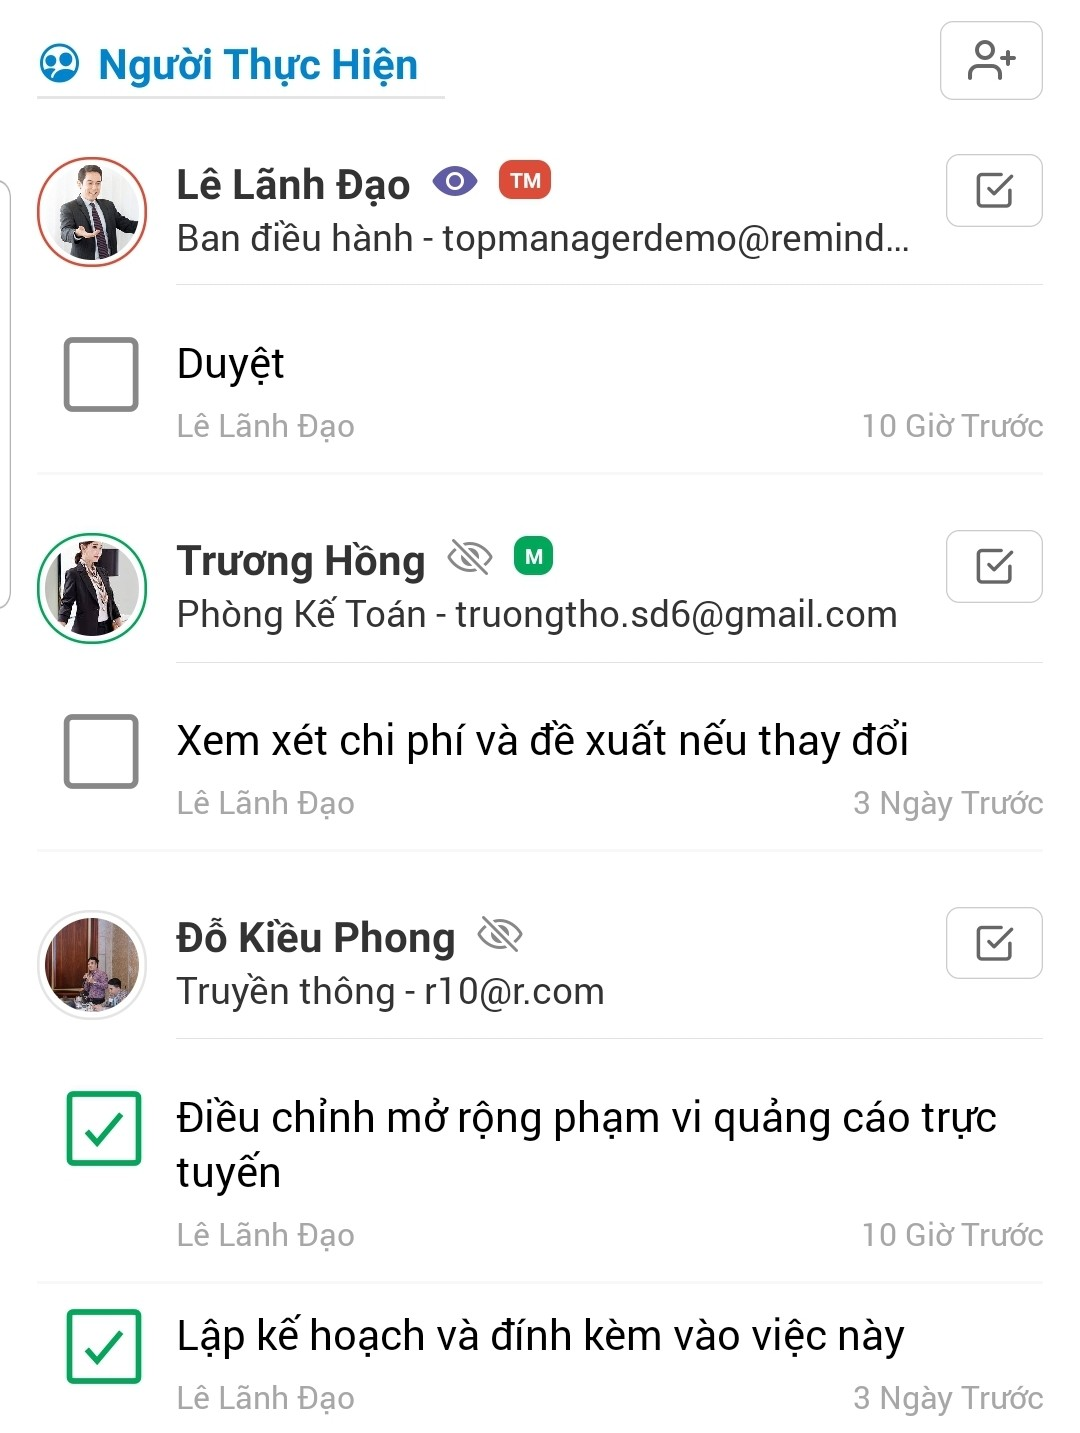 Phan cong cong viec tren mobile app